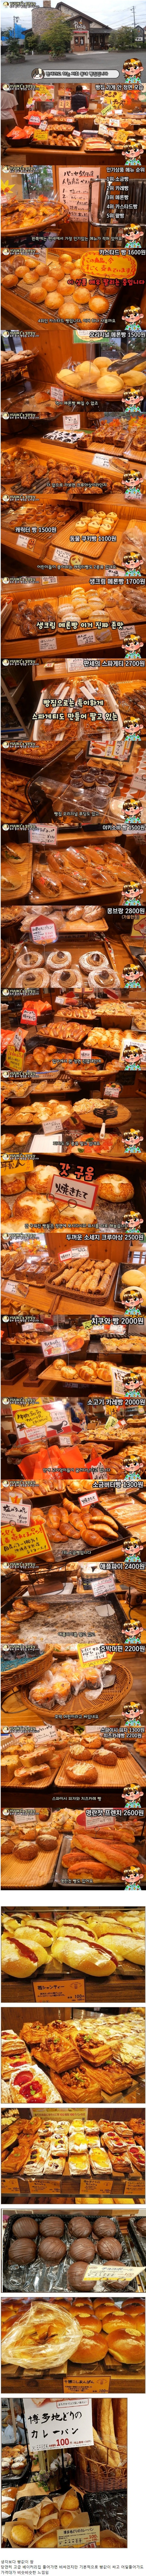 일본의 저렴한 빵 가격